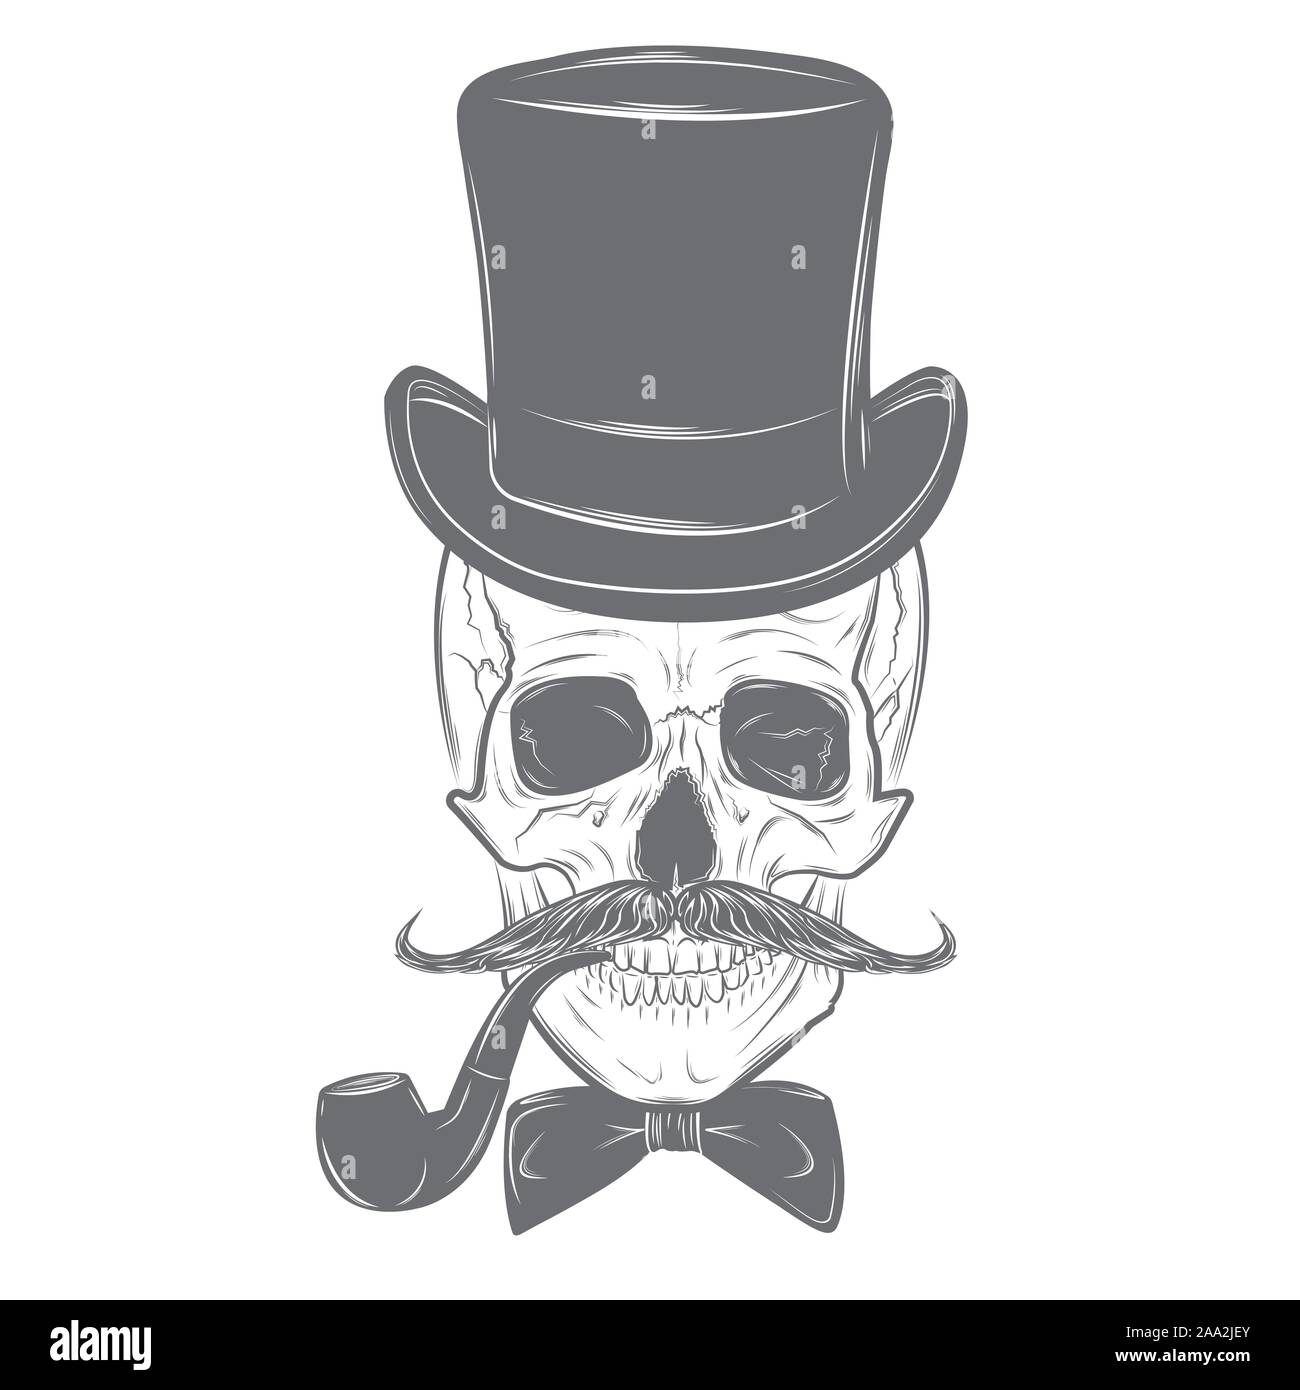 Monsieur crâne avec moustache, noeud papillon, haut de forme et pipe.  Imprimer Crâne Crâne, illustration isolé sur fond blanc. Le mode vectoriel  Image Vectorielle Stock - Alamy